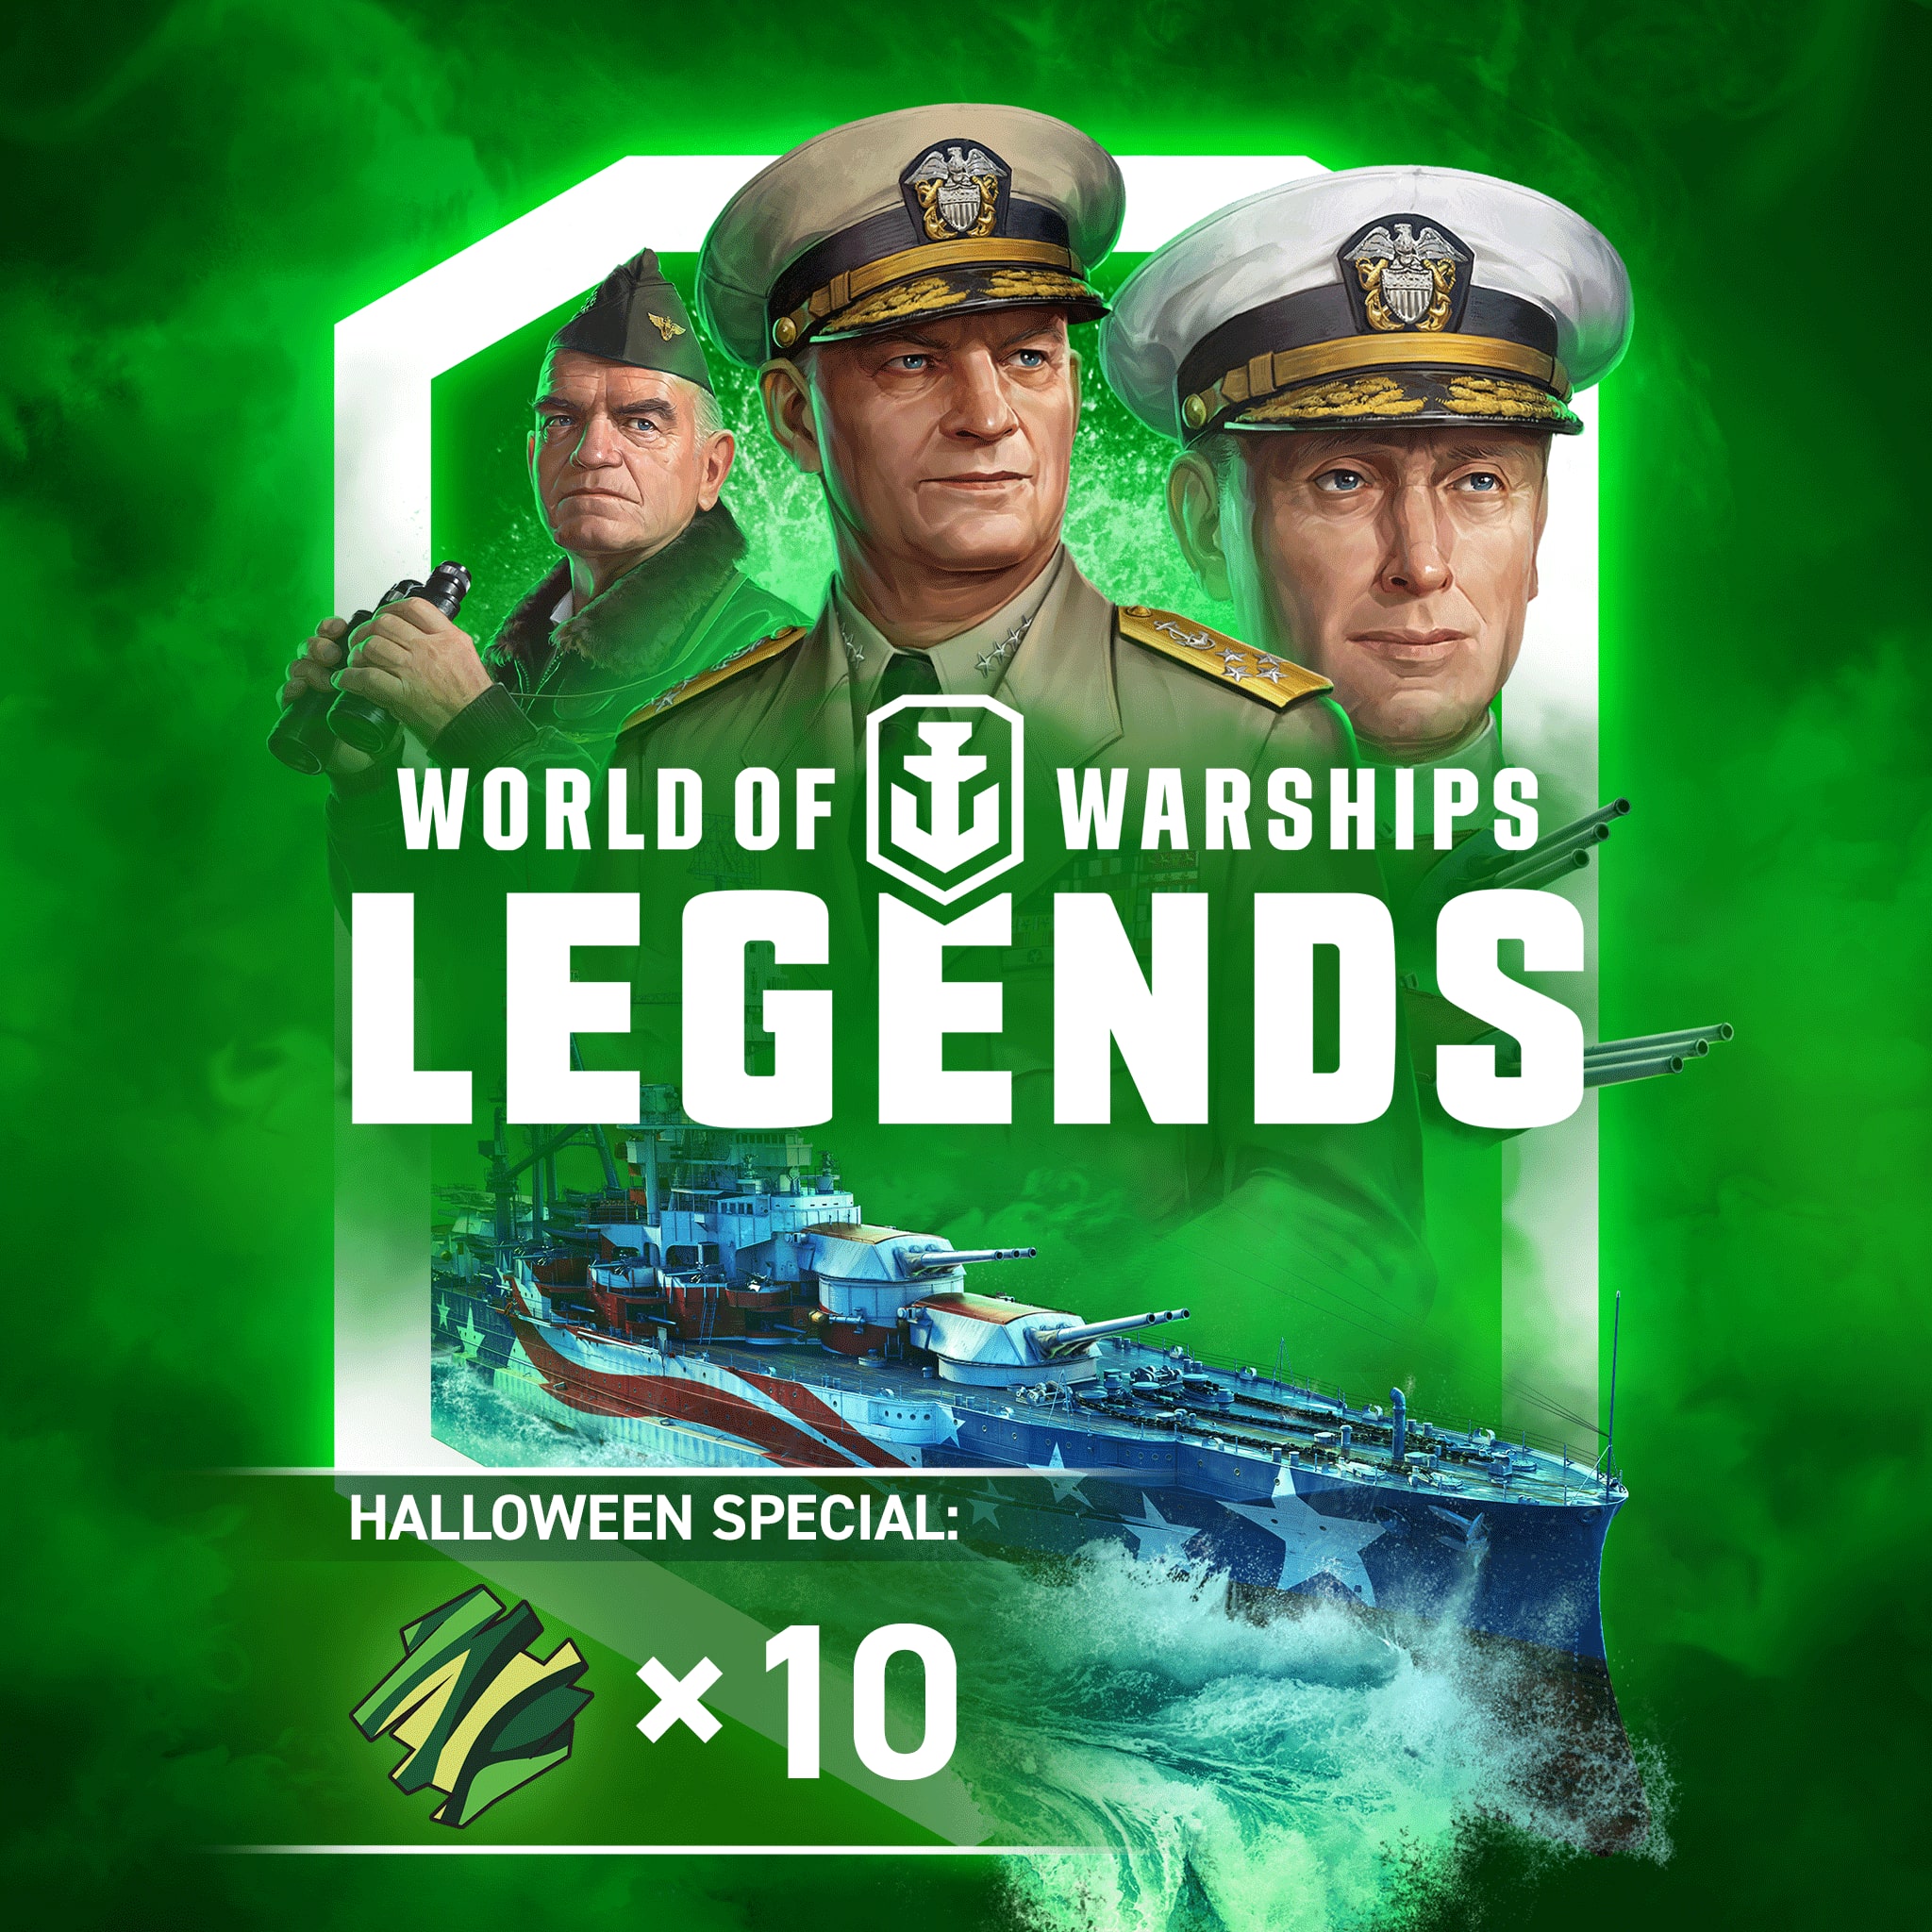 World of Warships: Legends — PS4 Itsenäisyyden mahti